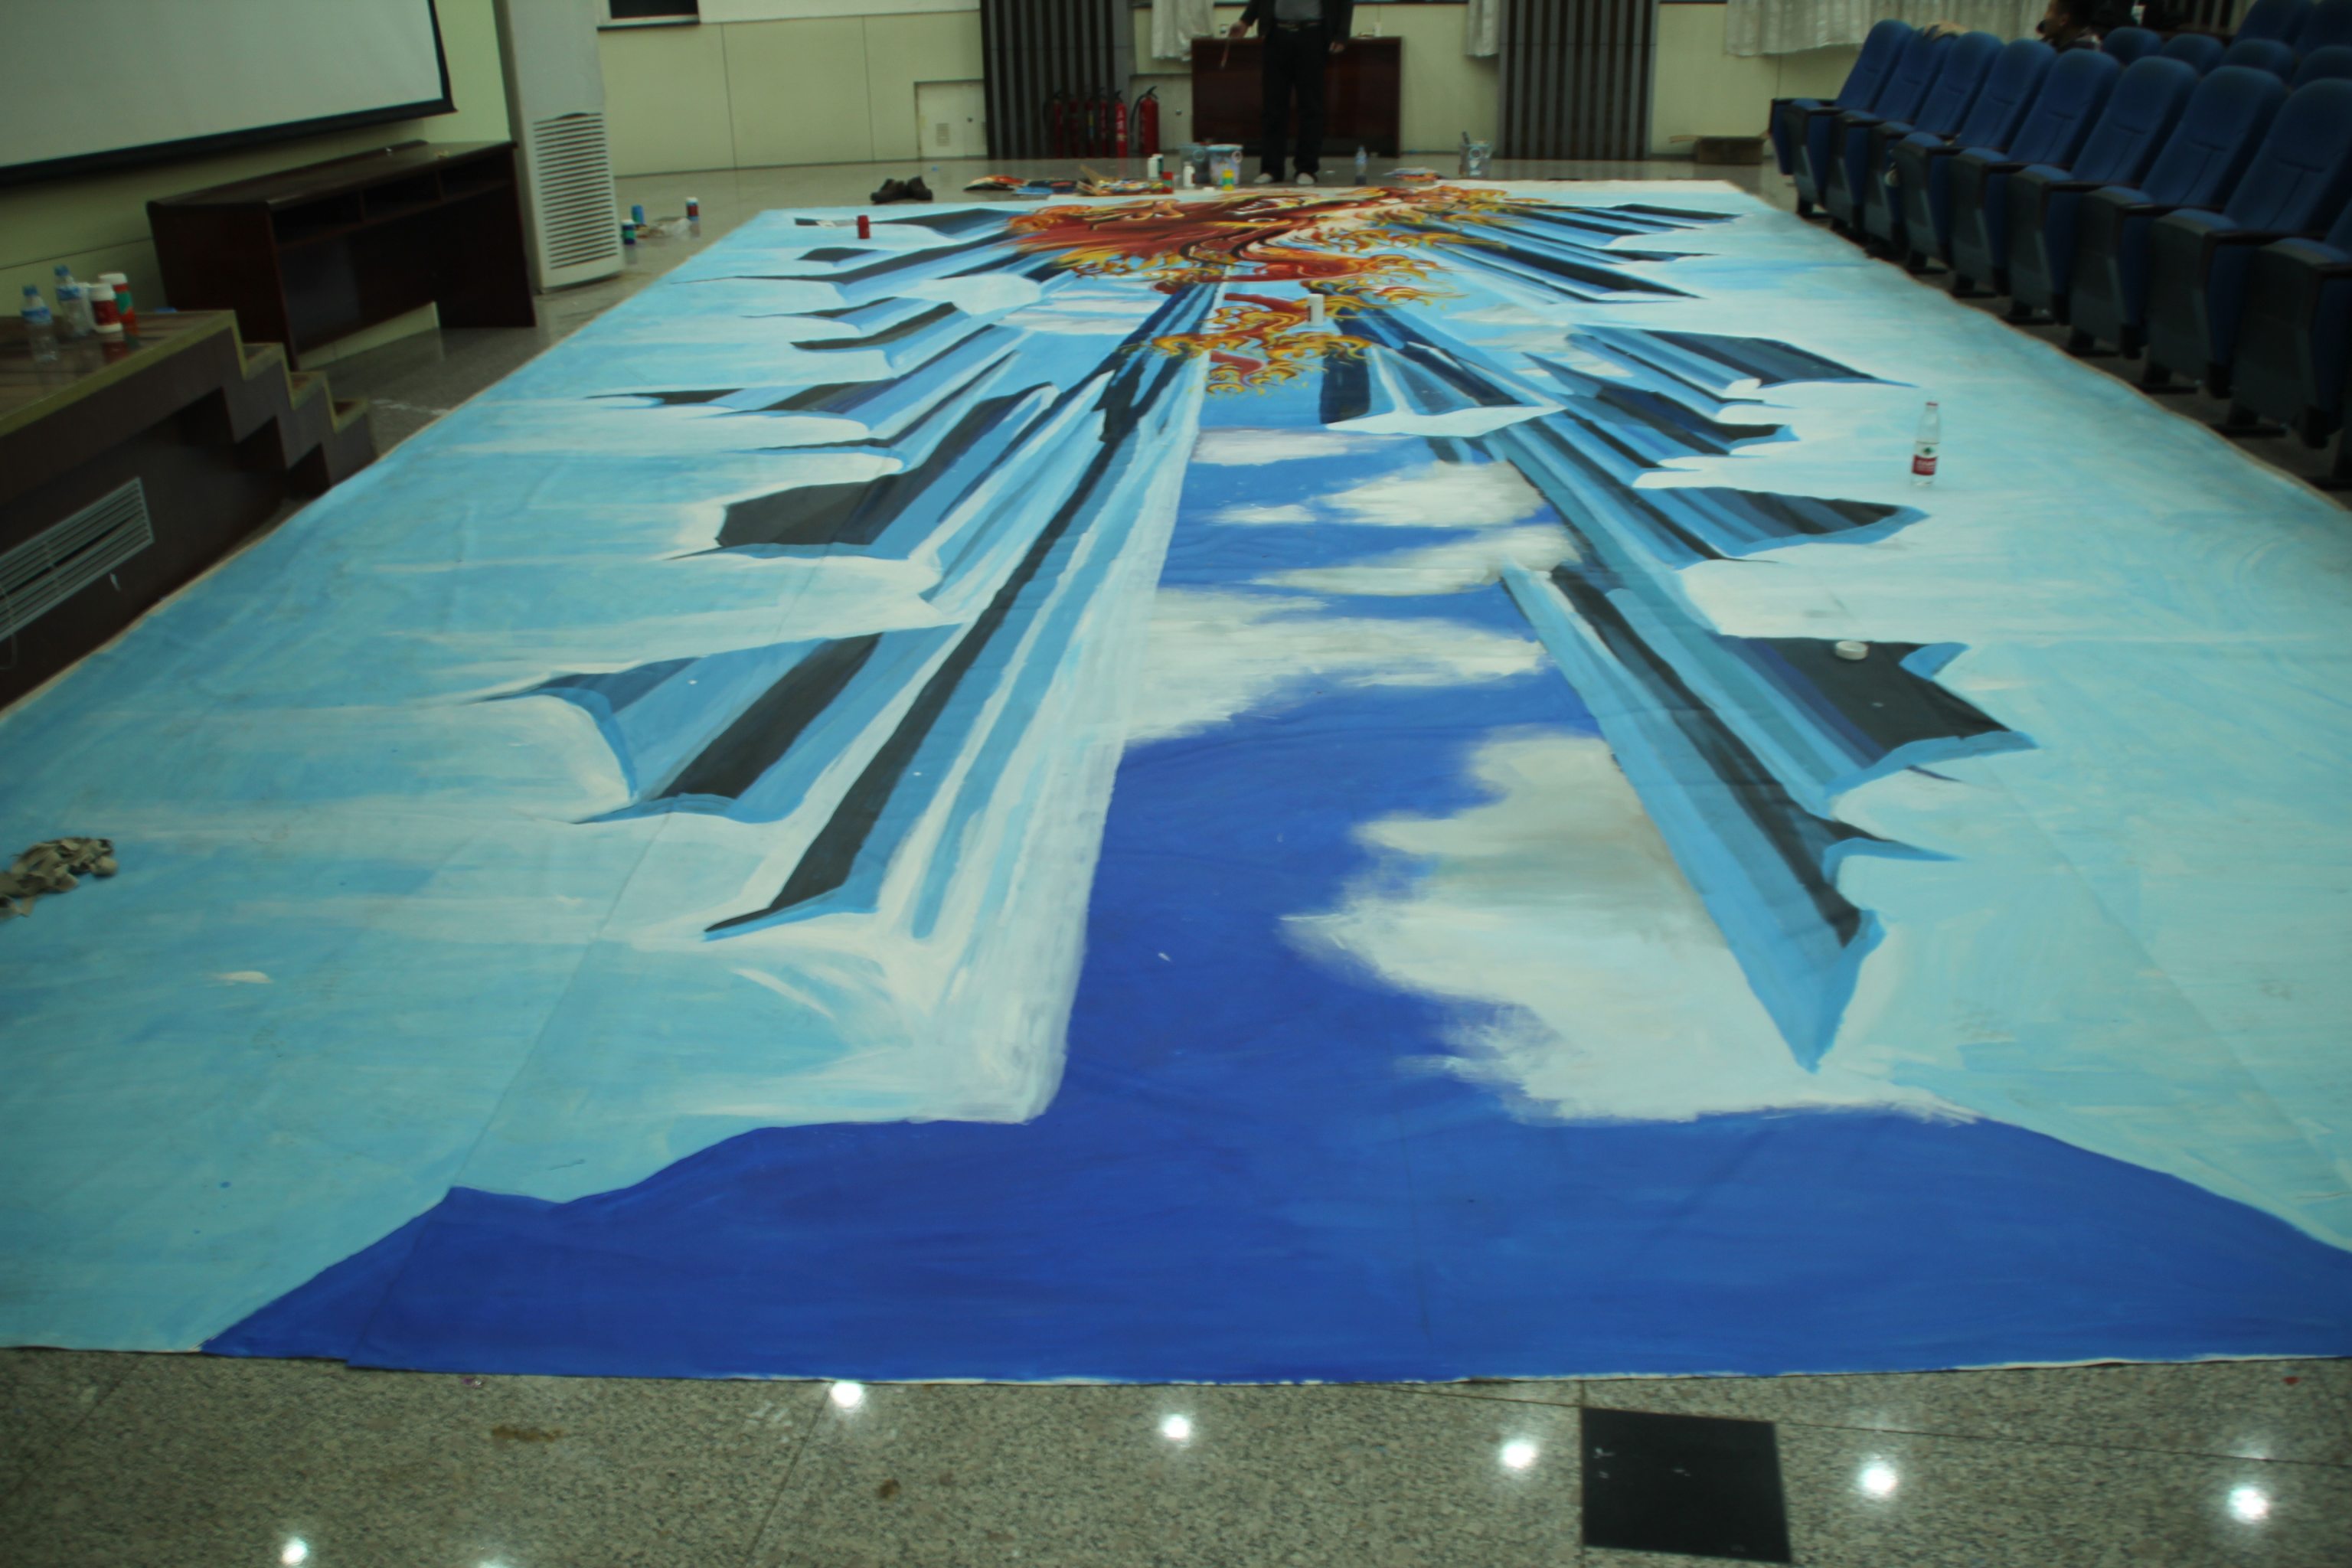 甘肃兰州市大型龙年车展3 d立体画  合作方: 展览时间:2011年8月25日